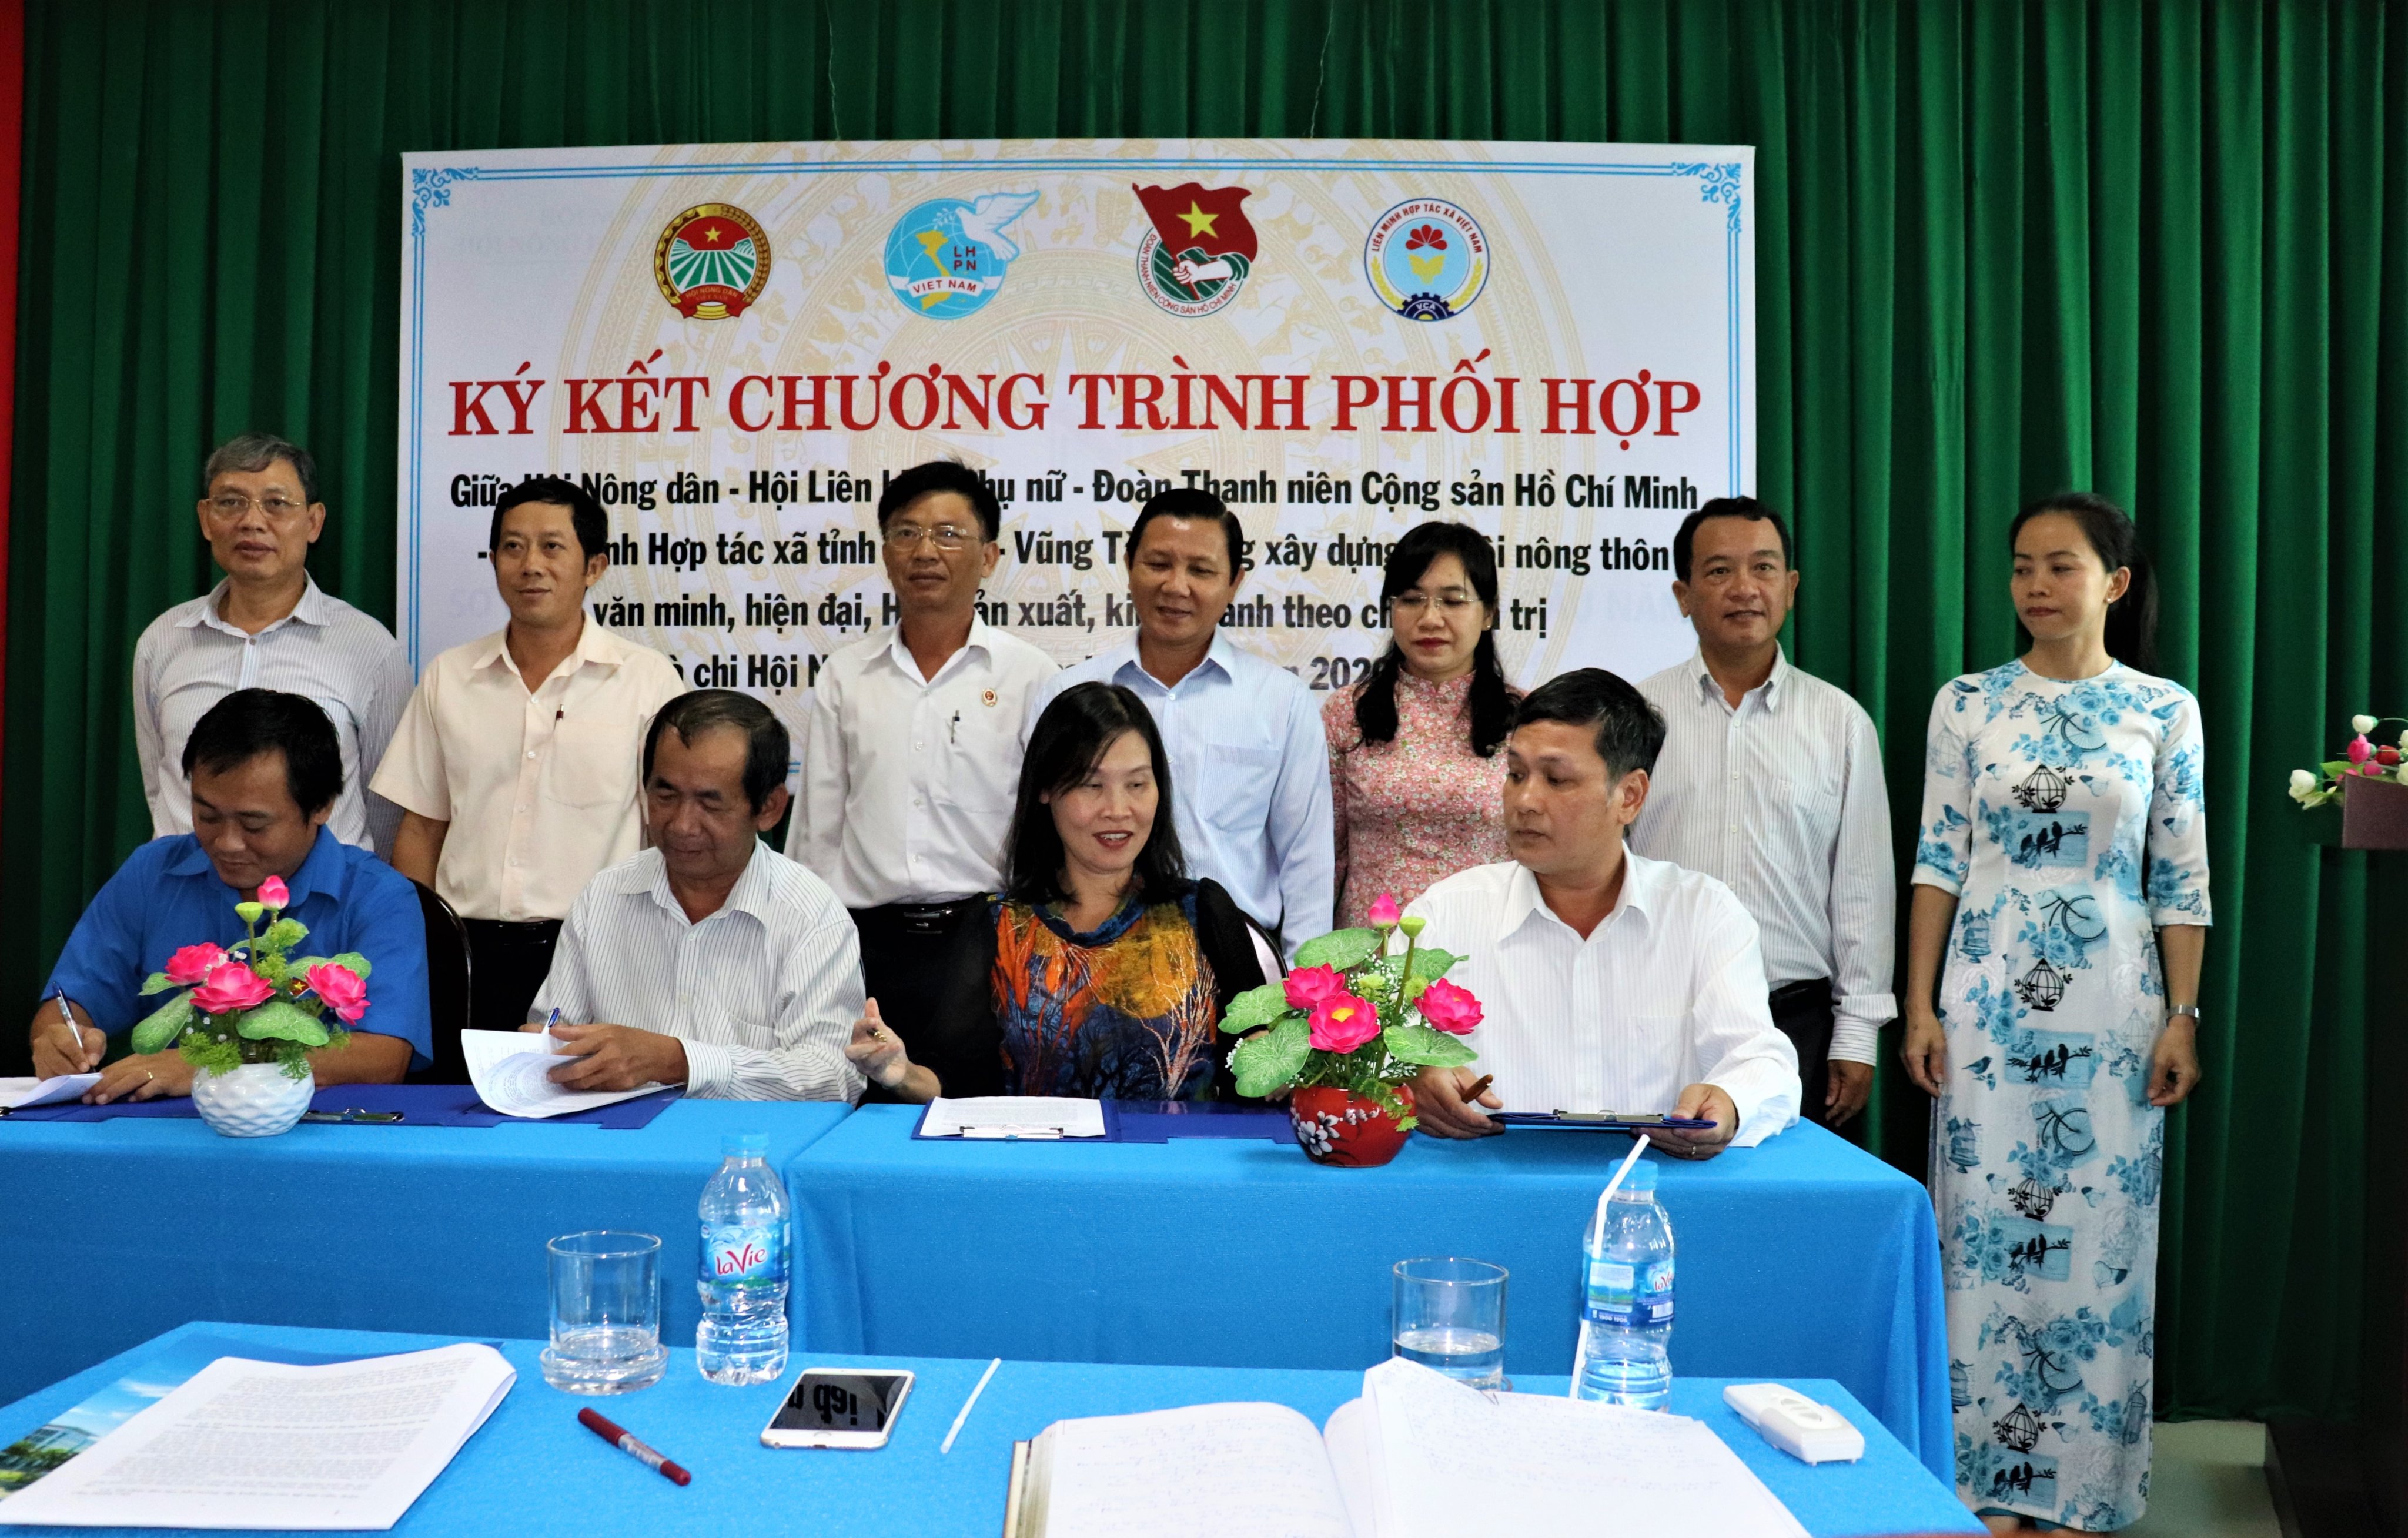 Lễ ký kết chương trình phối hợp hoạt động giữa Hội Nông dân - Hội LHPN - Đoàn TNCS Hồ Chí Minh và Liên minh HTX tỉnh giai đoạn 2020-2025.